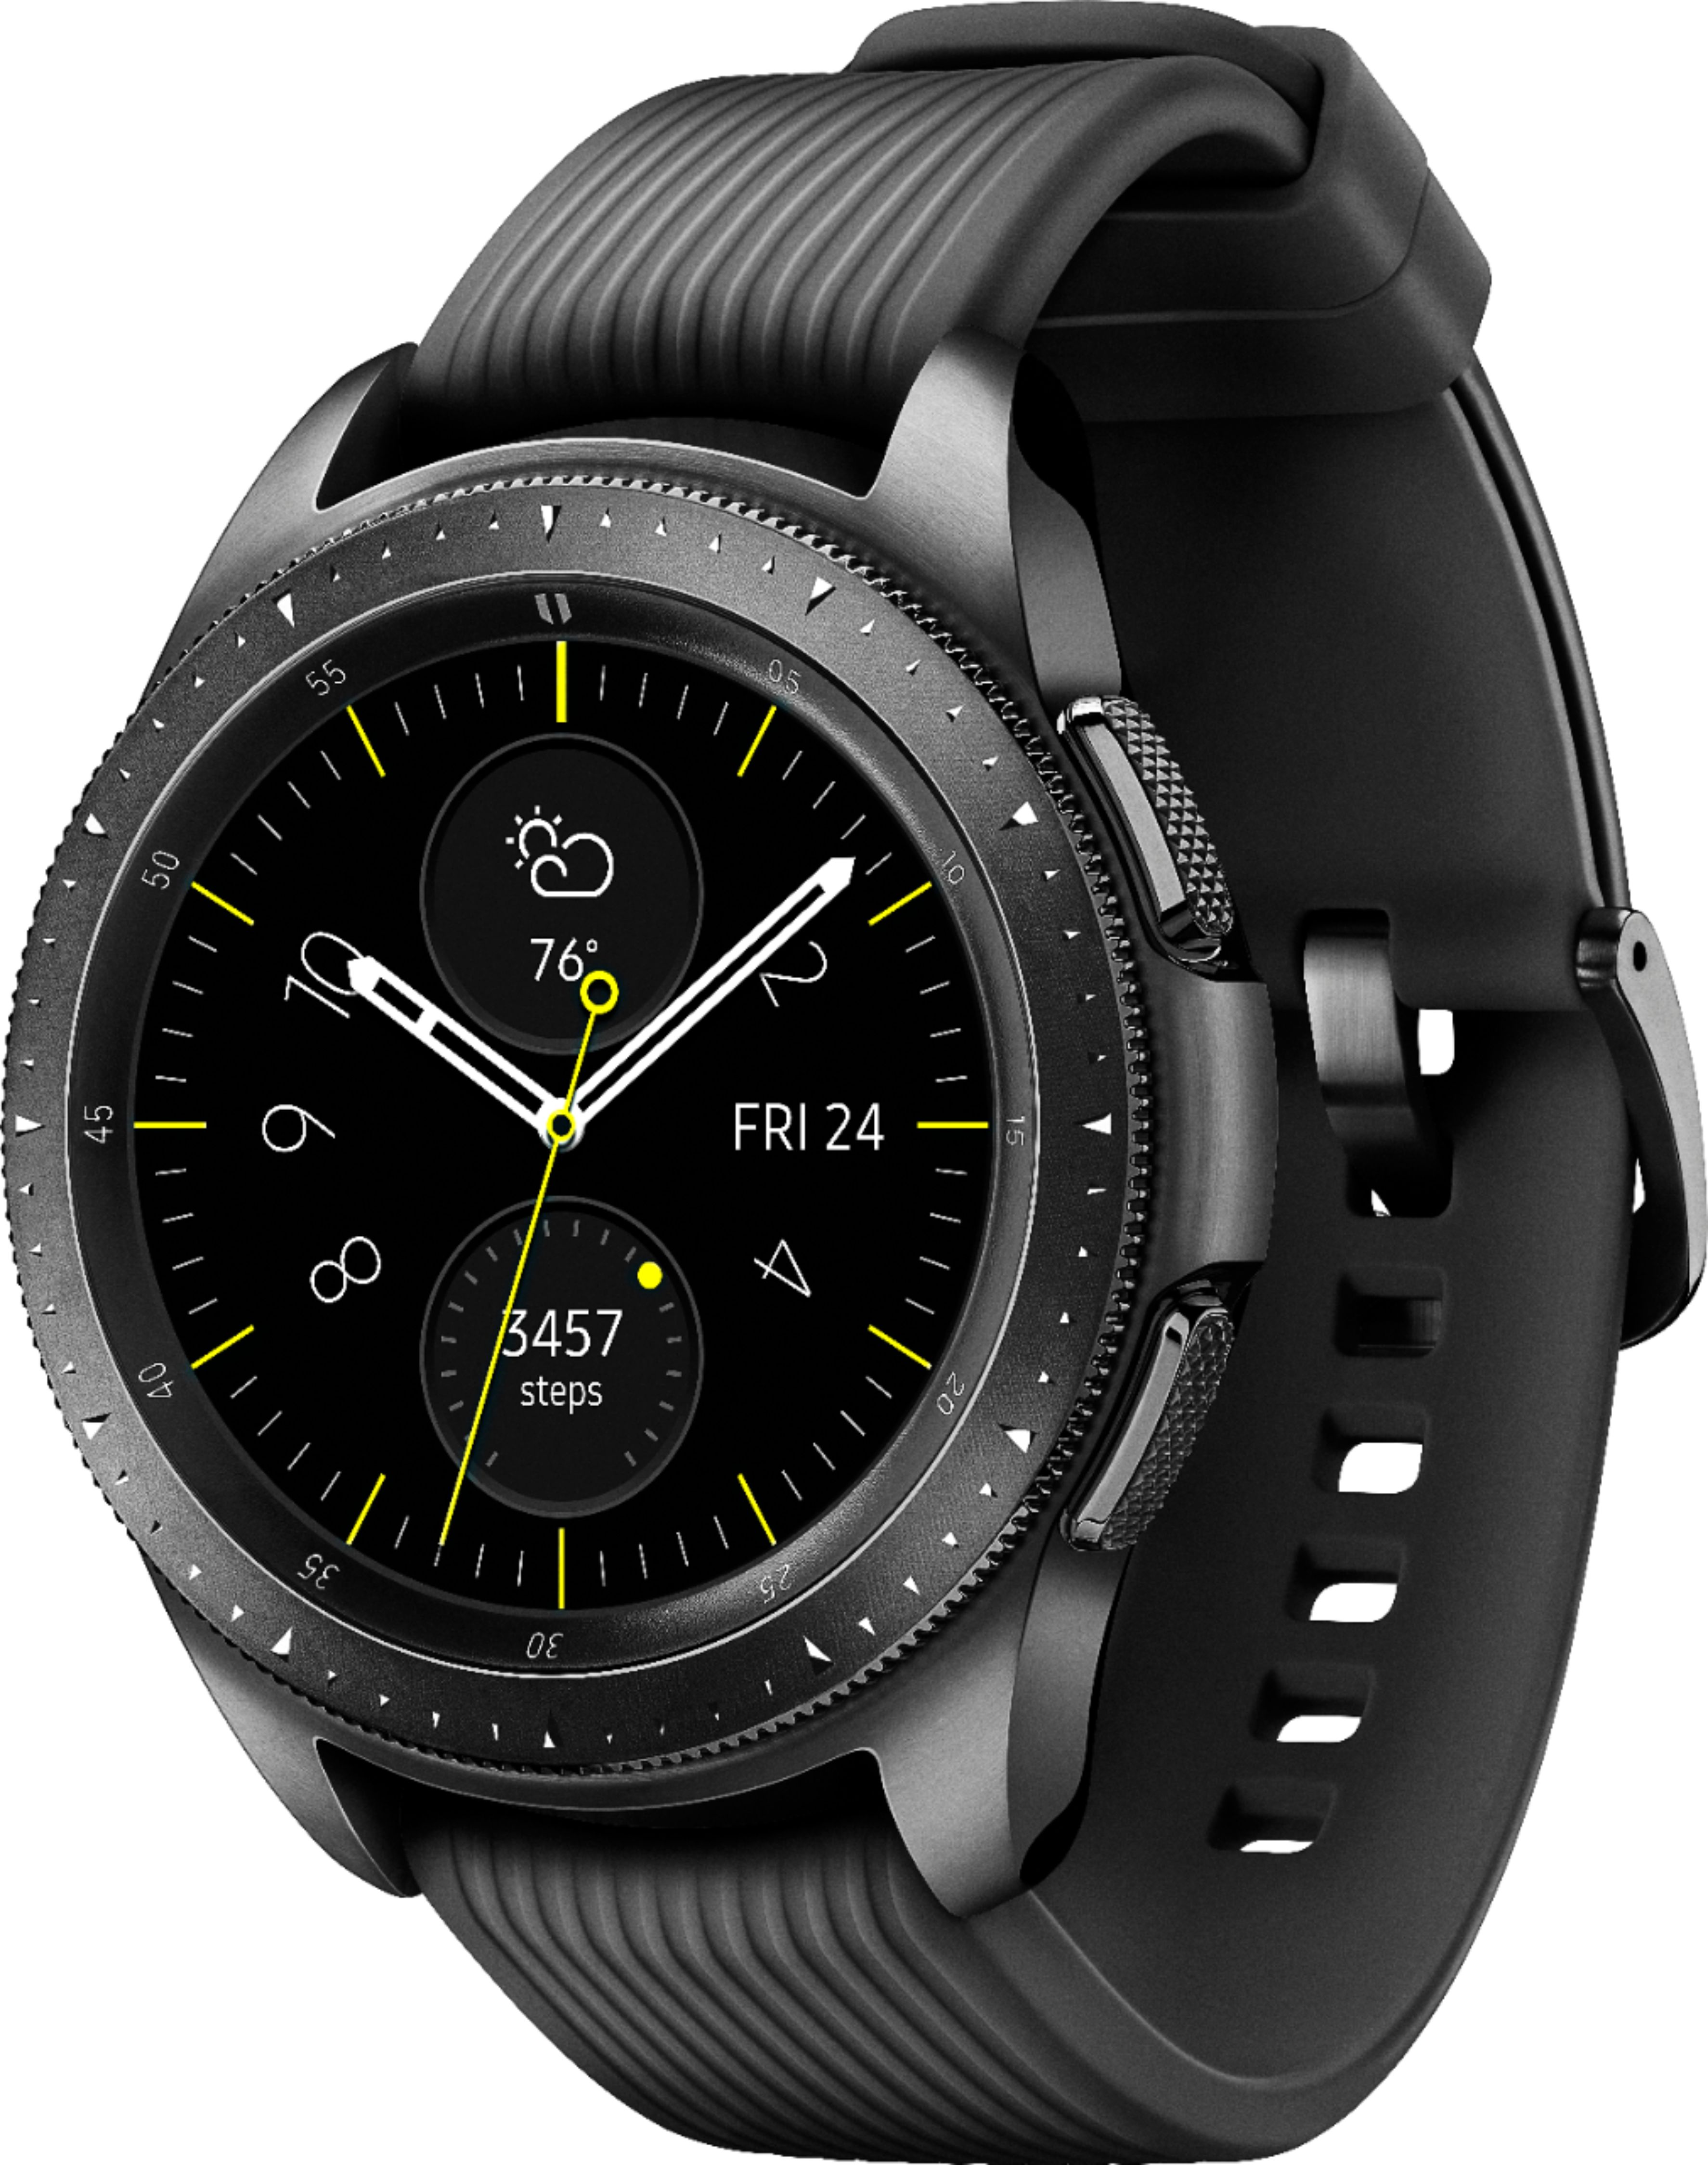 スマートフォン/携帯電話 その他 Best Buy: Samsung Galaxy Watch Smartwatch 42mm Stainless Steel LTE 